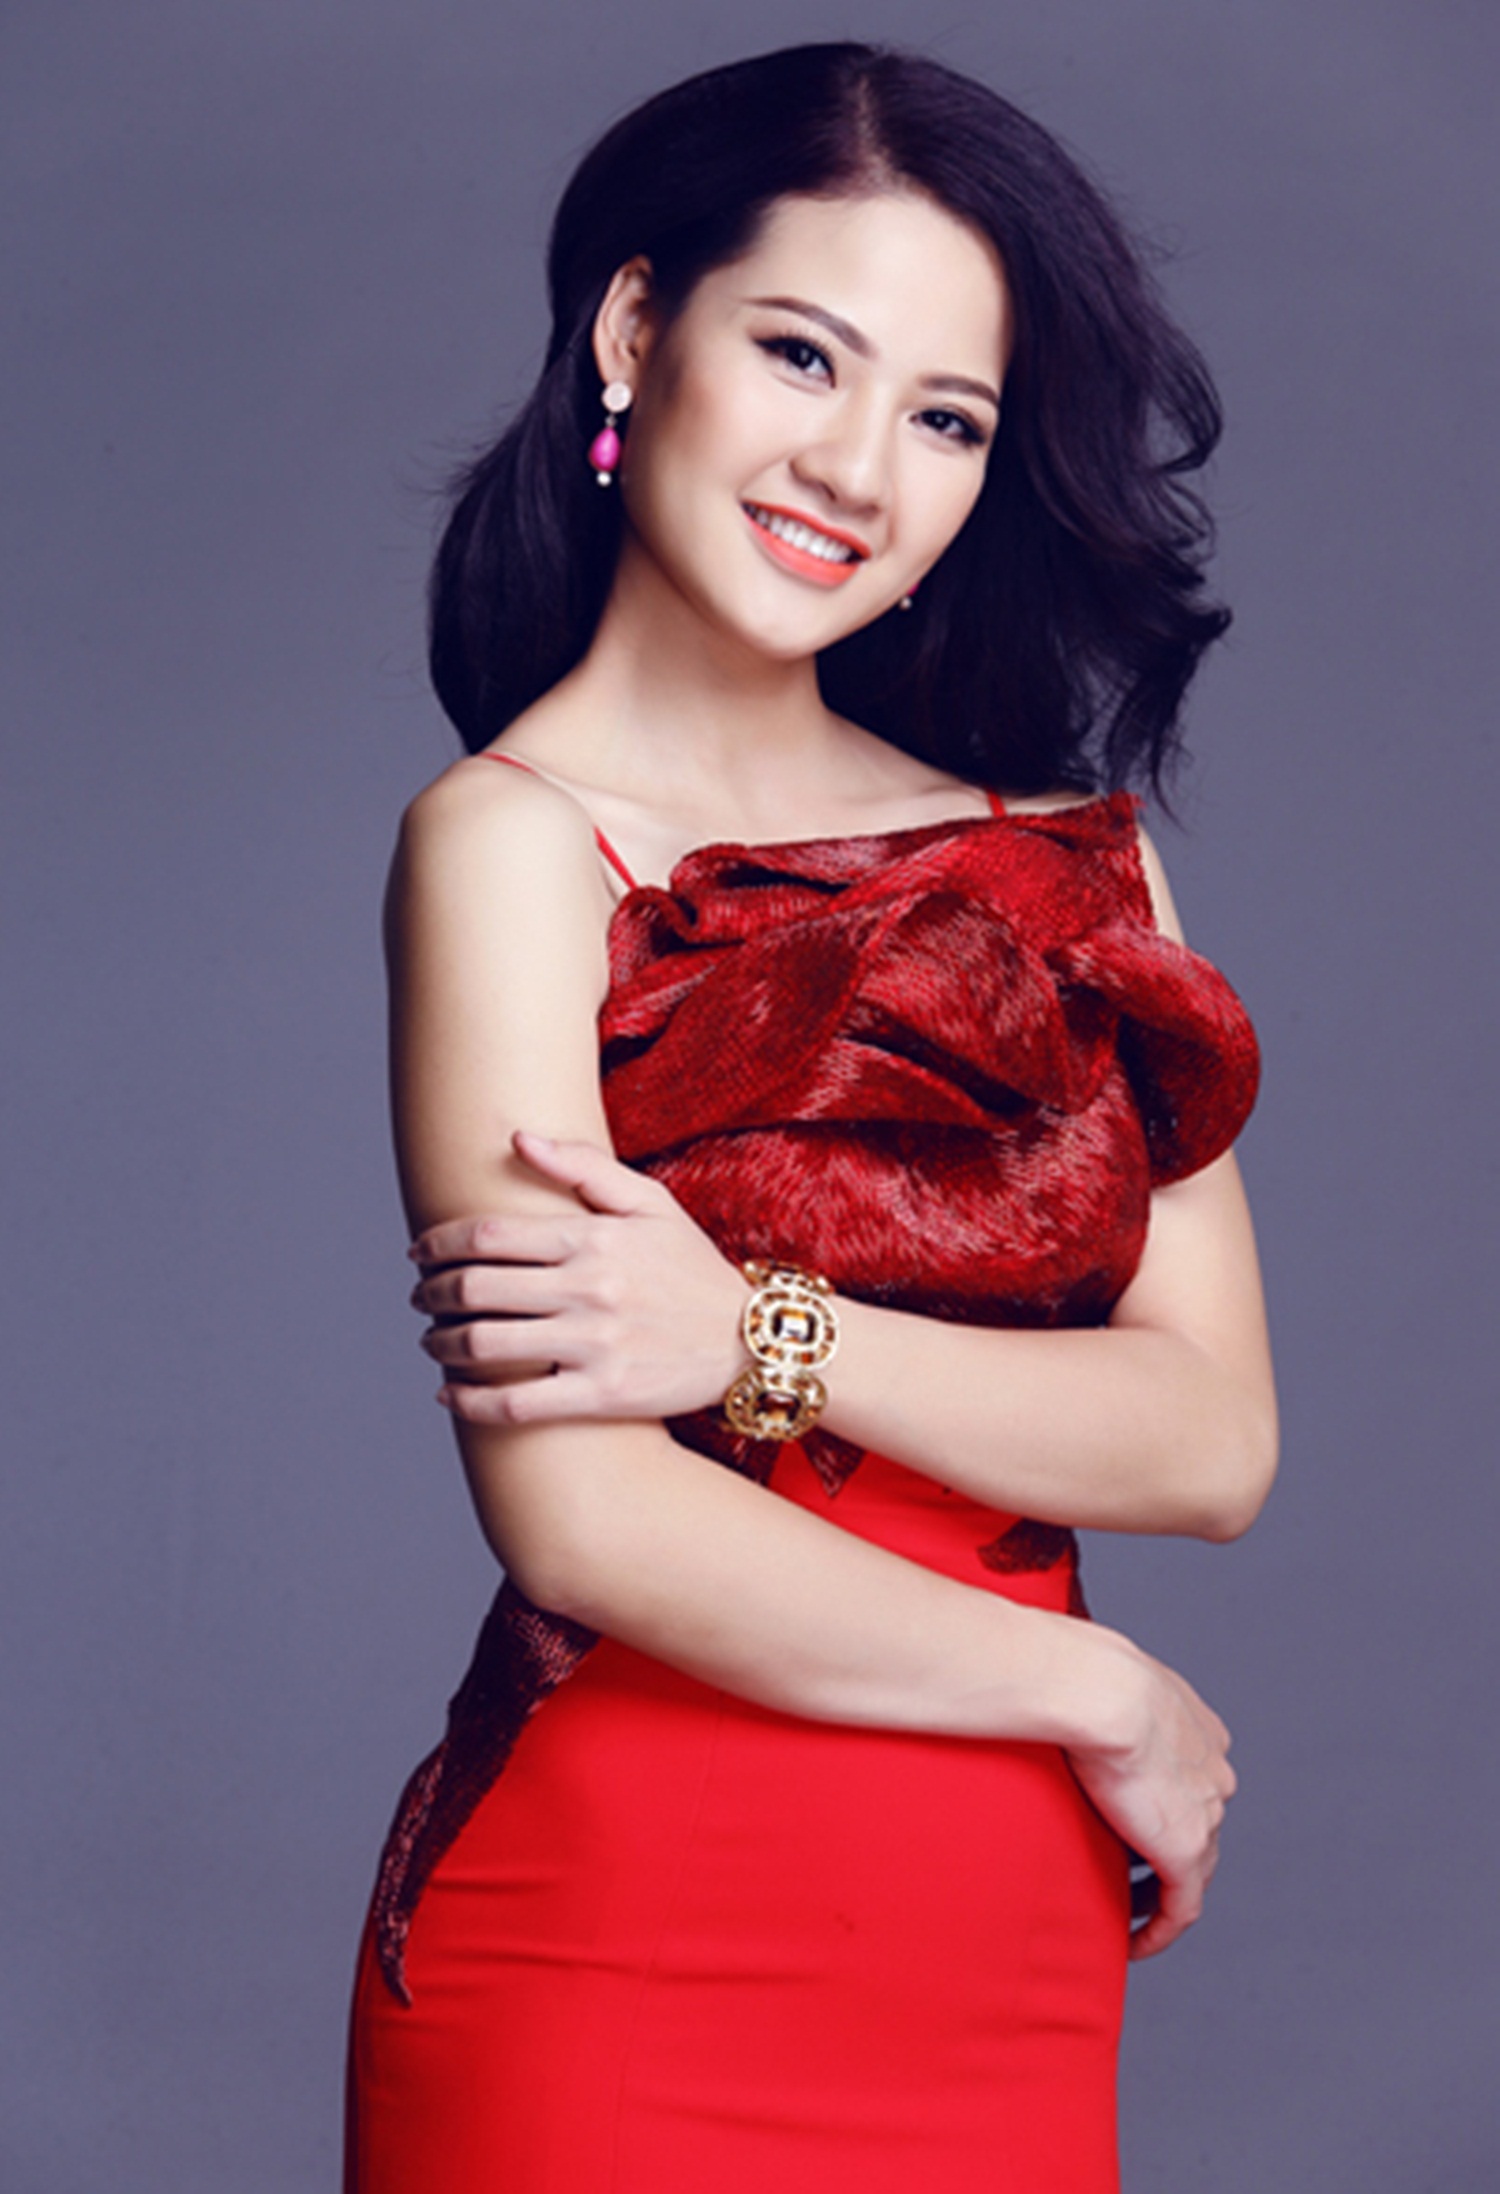 Top 10 Địa chỉ mua váy đẹp nhất cho bạn nữ tại Hà Nội - toplist.vn